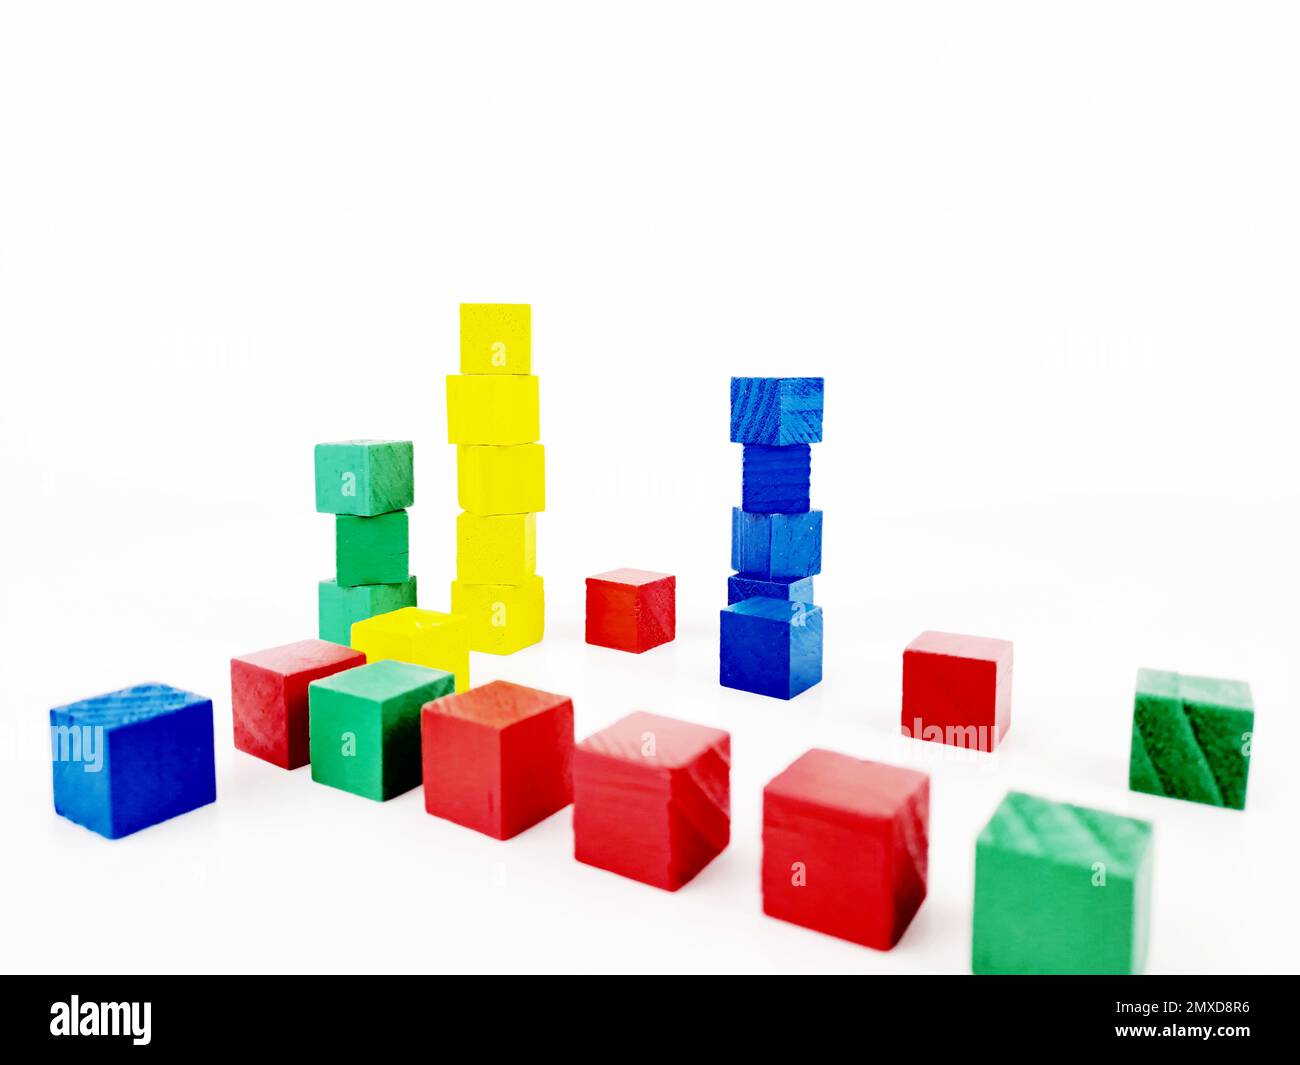 Motif abstrait avec 3D cubes en bois colorés. Arrière-plan blanc Banque D'Images